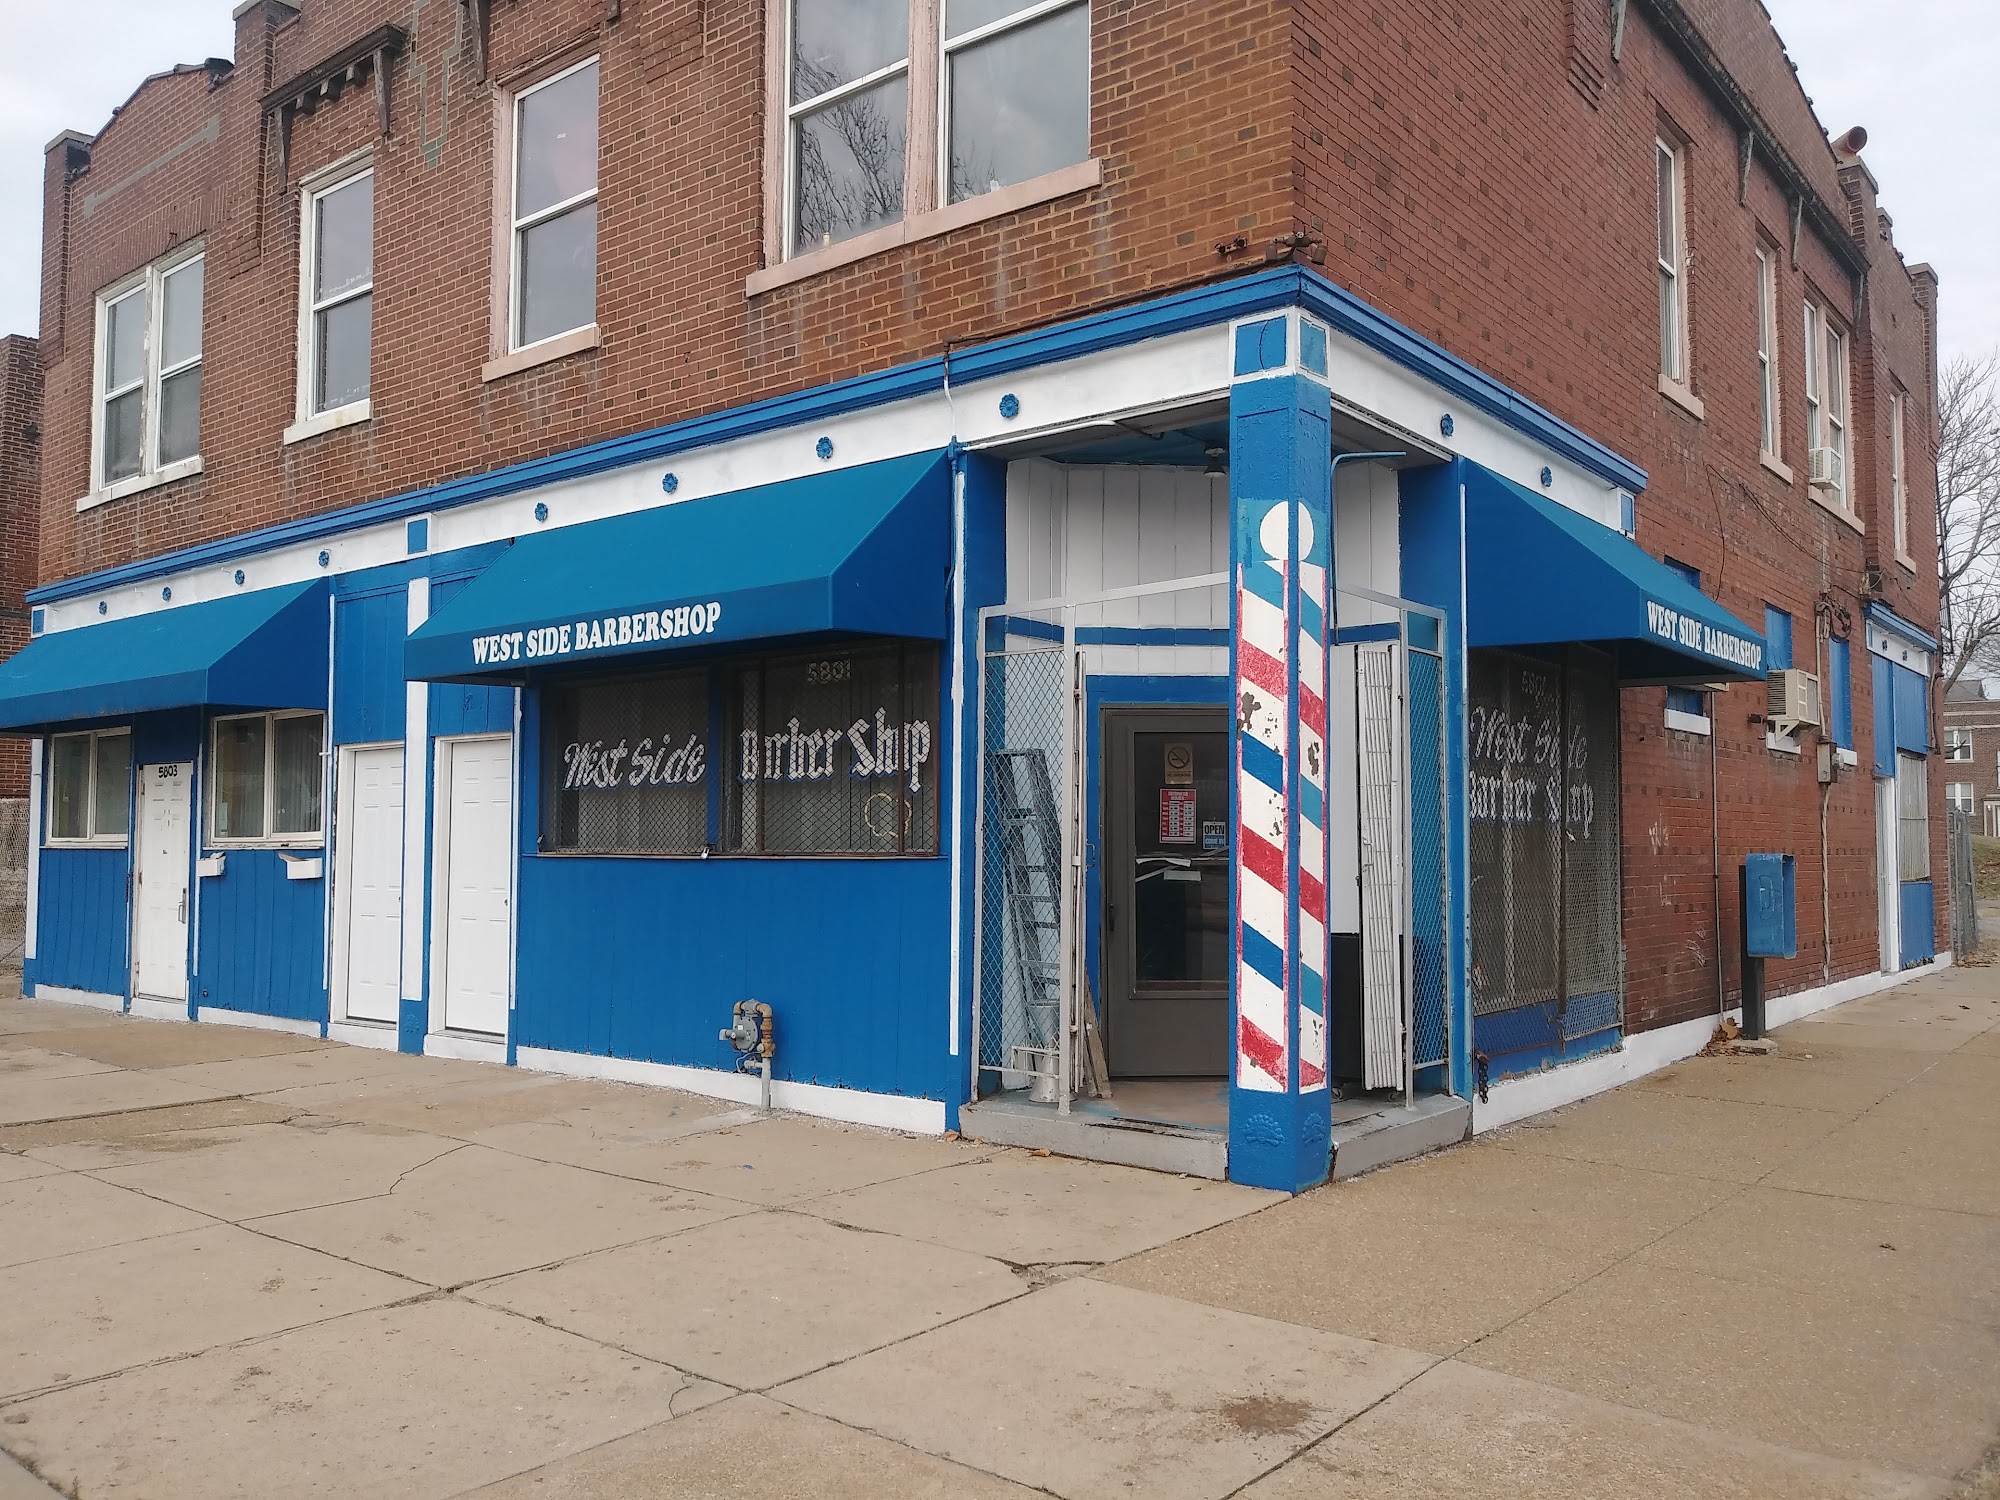 The Westside Barber Shop